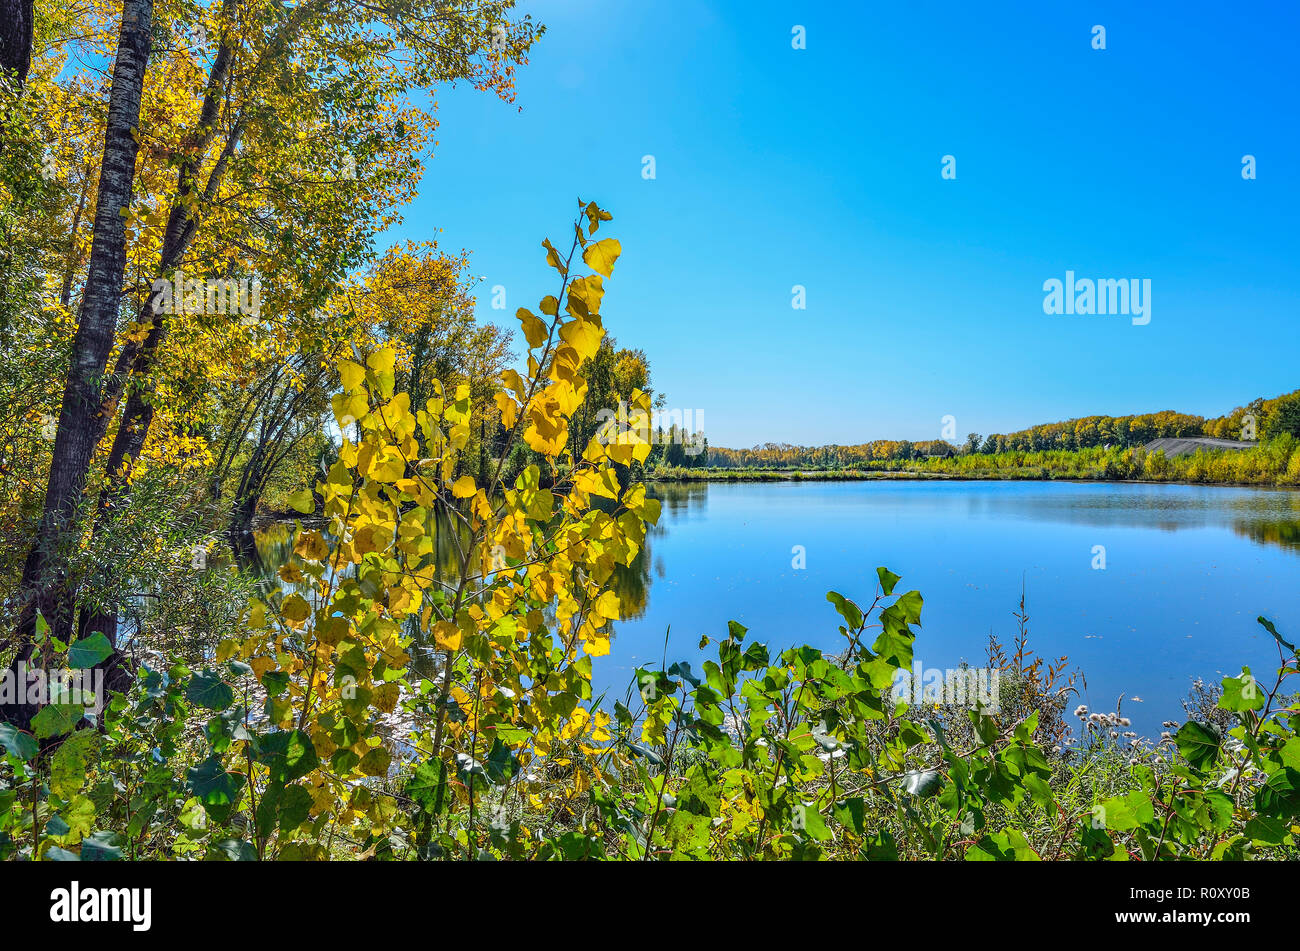 Warme, sonnige September Landschaft am Ufer des Sees. Blauer Himmel und goldenen Laub der Bäume auf der Oberfläche des Wassers wider, der Schönheit der Natur im Herbst Stockfoto